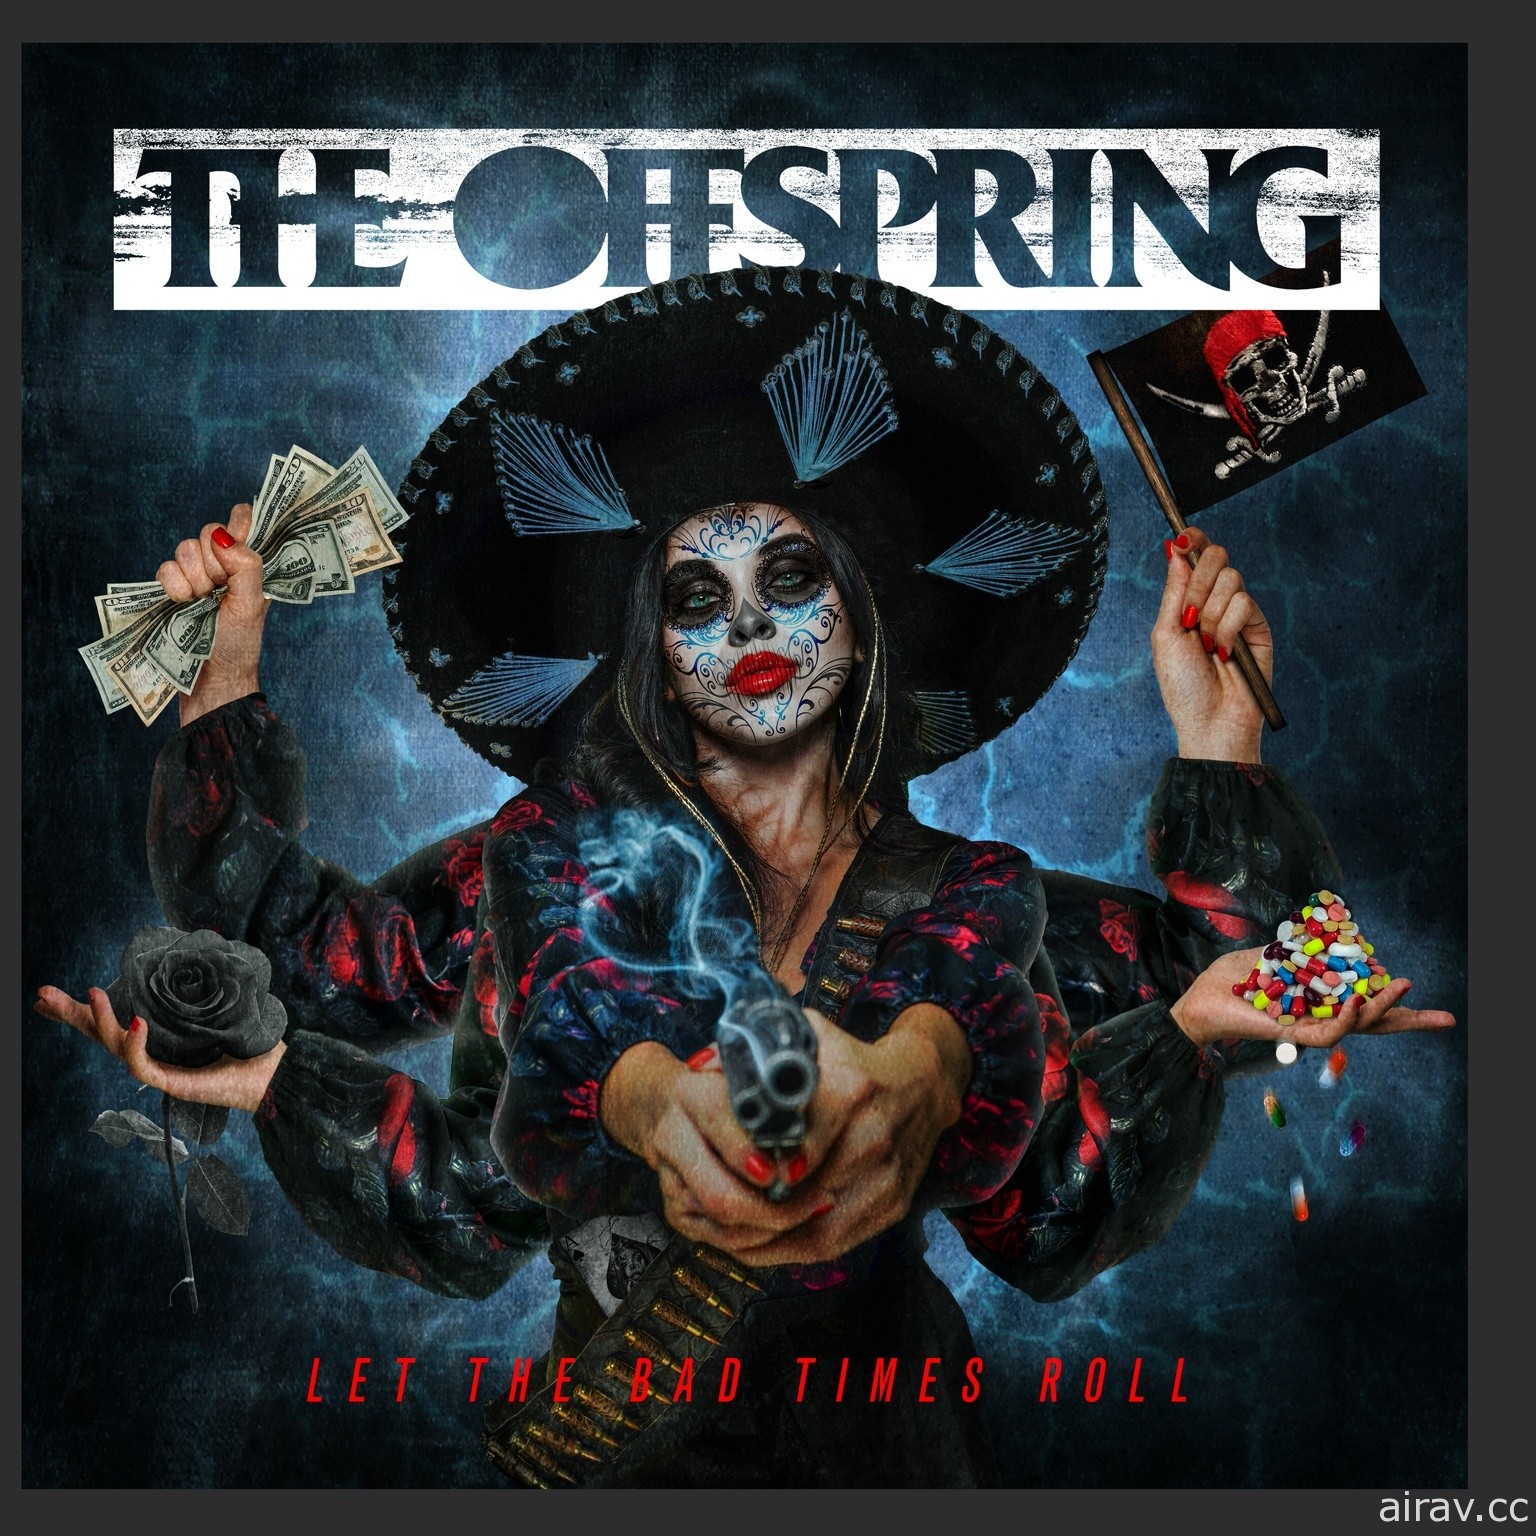 一同搖滾戰場 《戰車世界》與美國樂團「The Offspring」合作內容再度限時登場